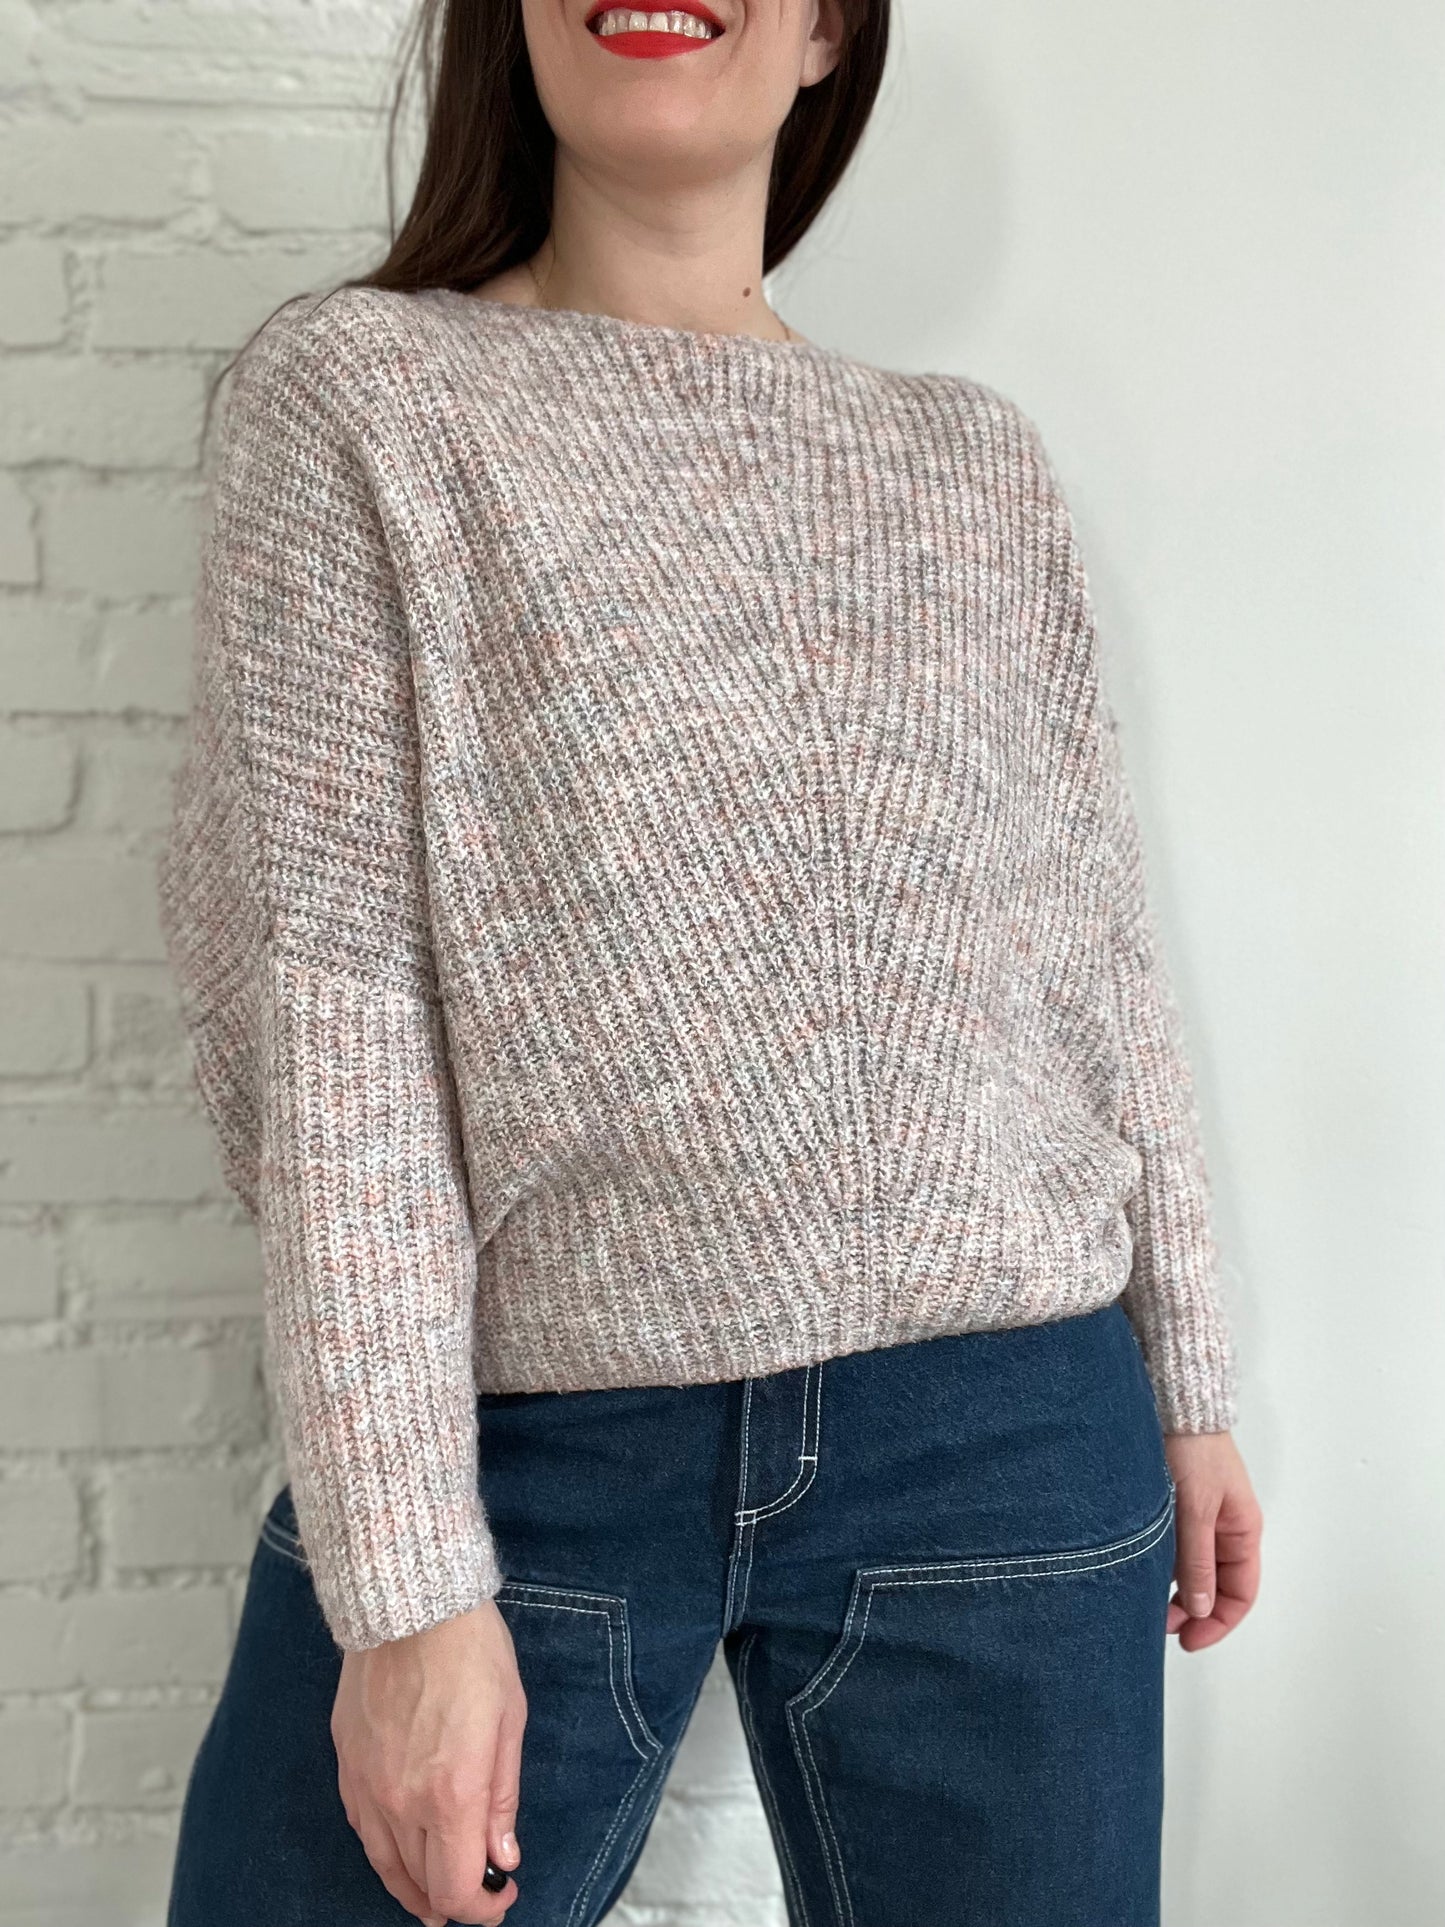 Blush Pink Soft Knit Sweater - XS/S